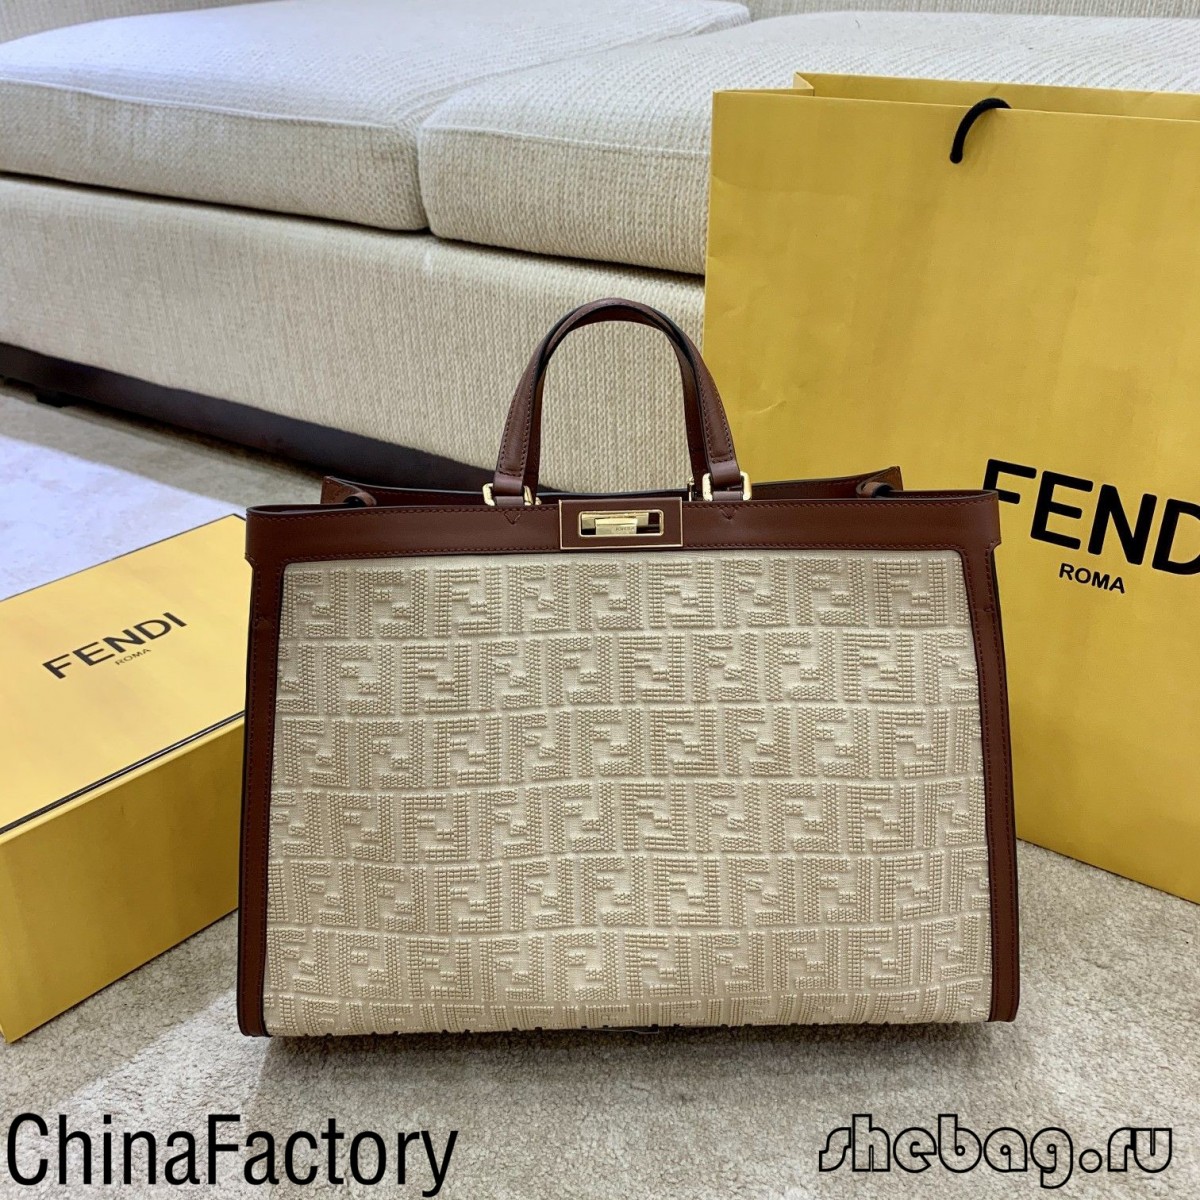 Gdje mogu kupiti visokokvalitetnu torbu Fendi Peekaboo Replica? (izdanje 2022.) - Online trgovina lažne Louis Vuitton torbe najbolje kvalitete, dizajnerska replika torbe ru